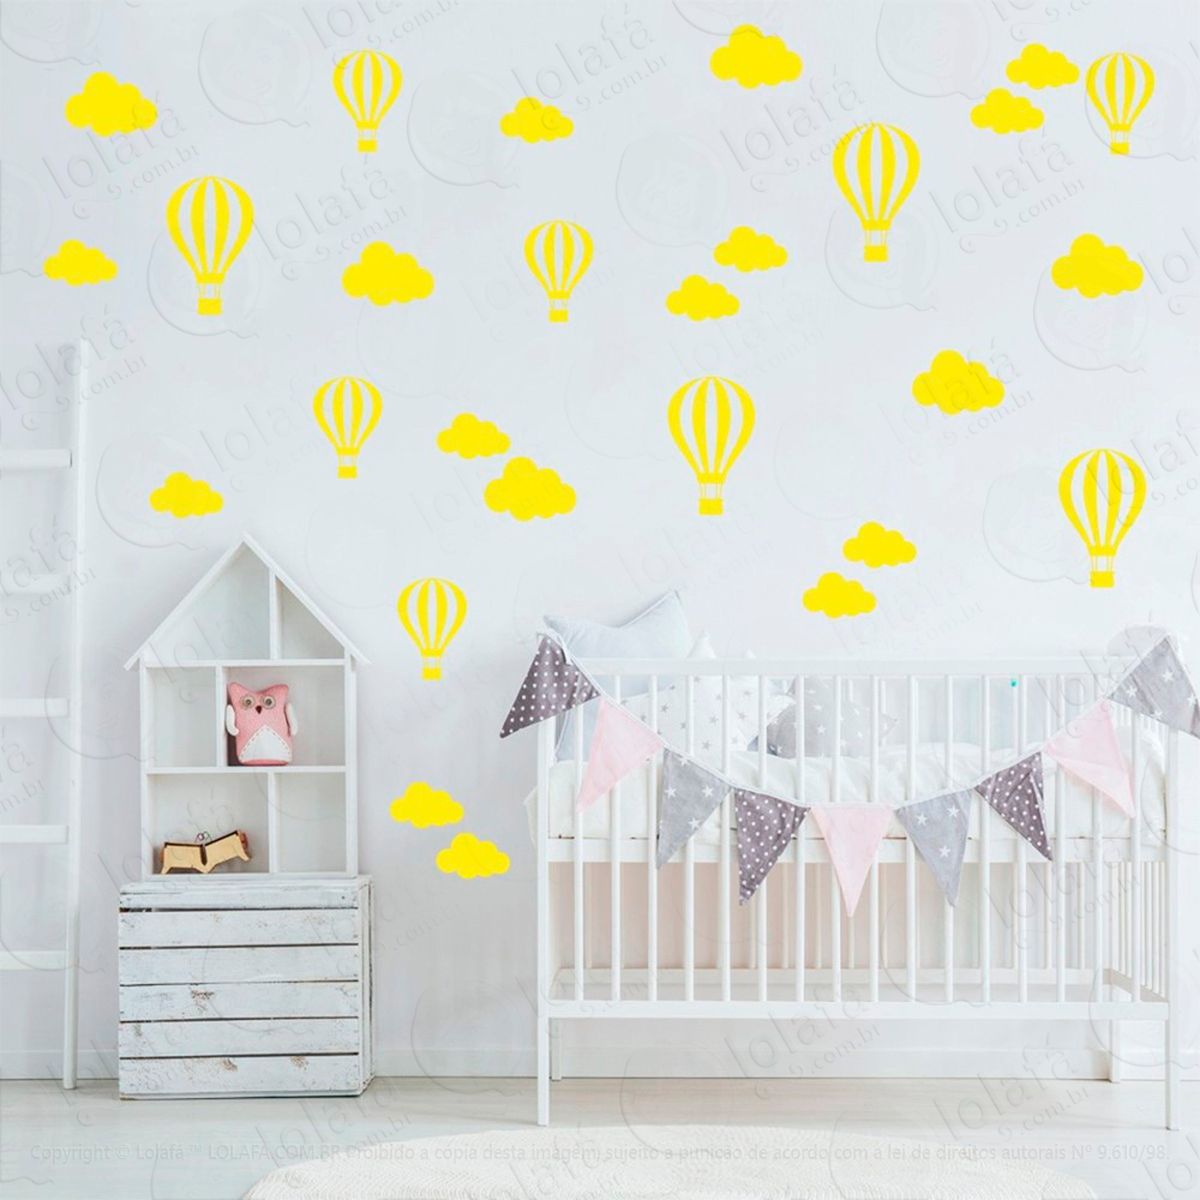 adesivos nuvens e balões 50 peças adesivos para quarto de bebê infantil - mod:837